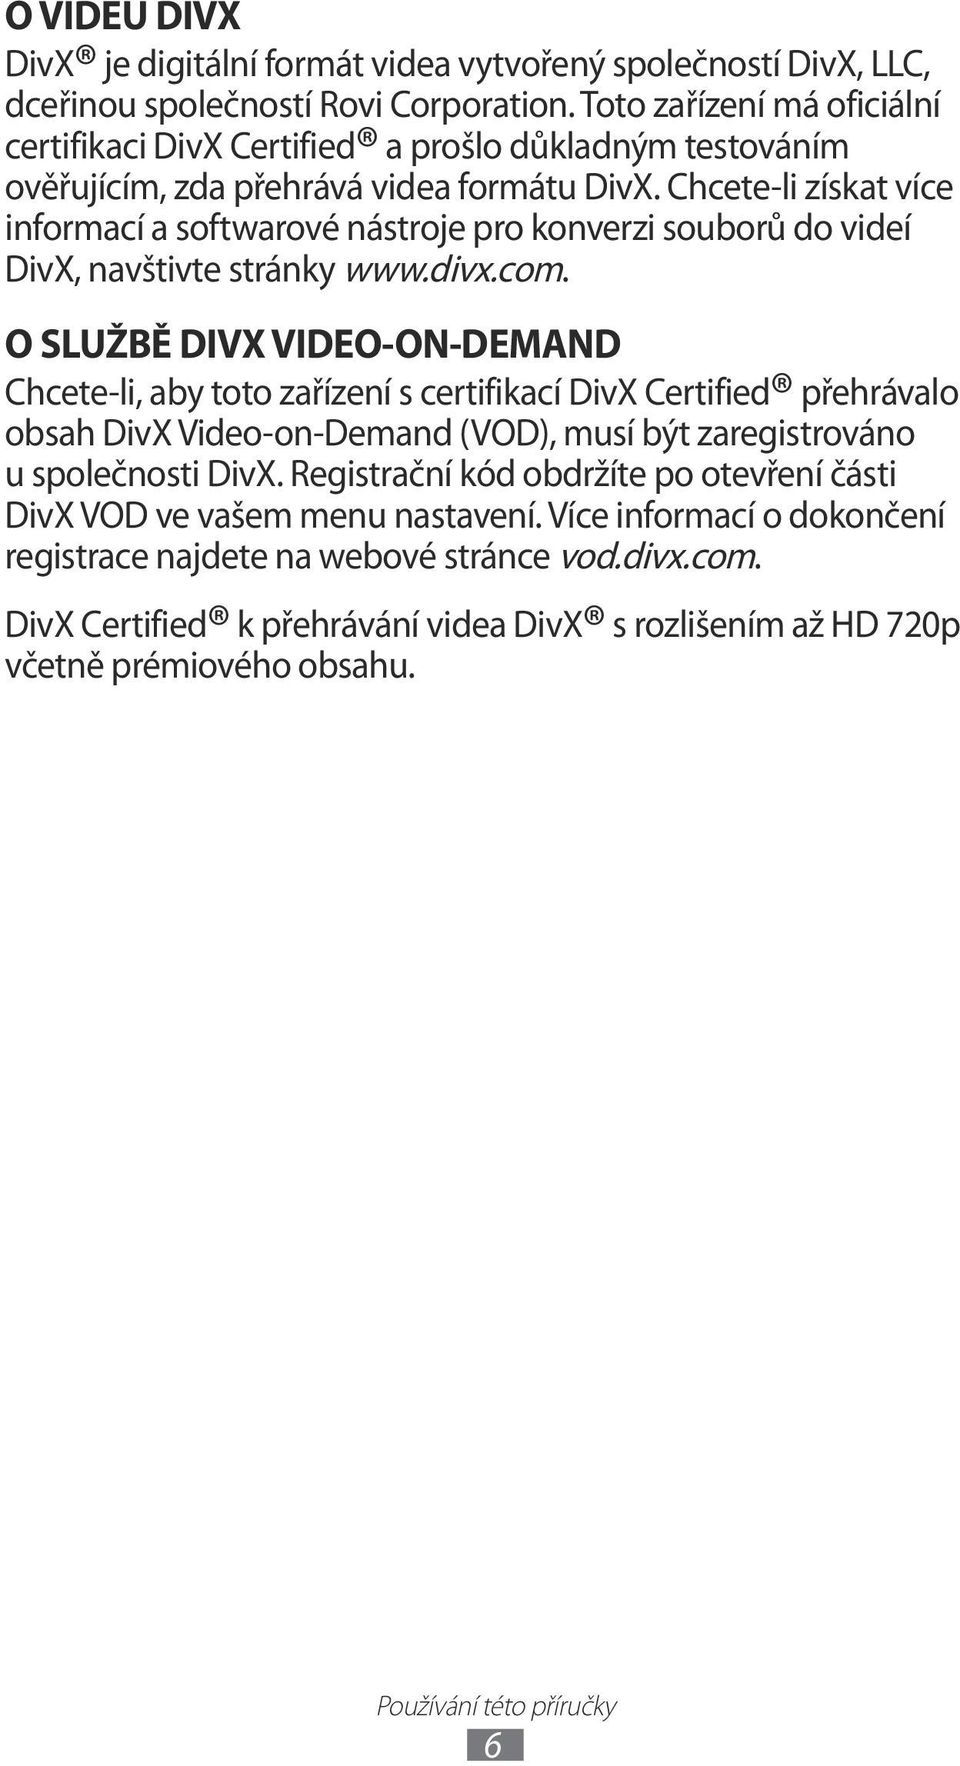 Chcete-li získat více informací a softwarové nástroje pro konverzi souborů do videí DivX, navštivte stránky www.divx.com.